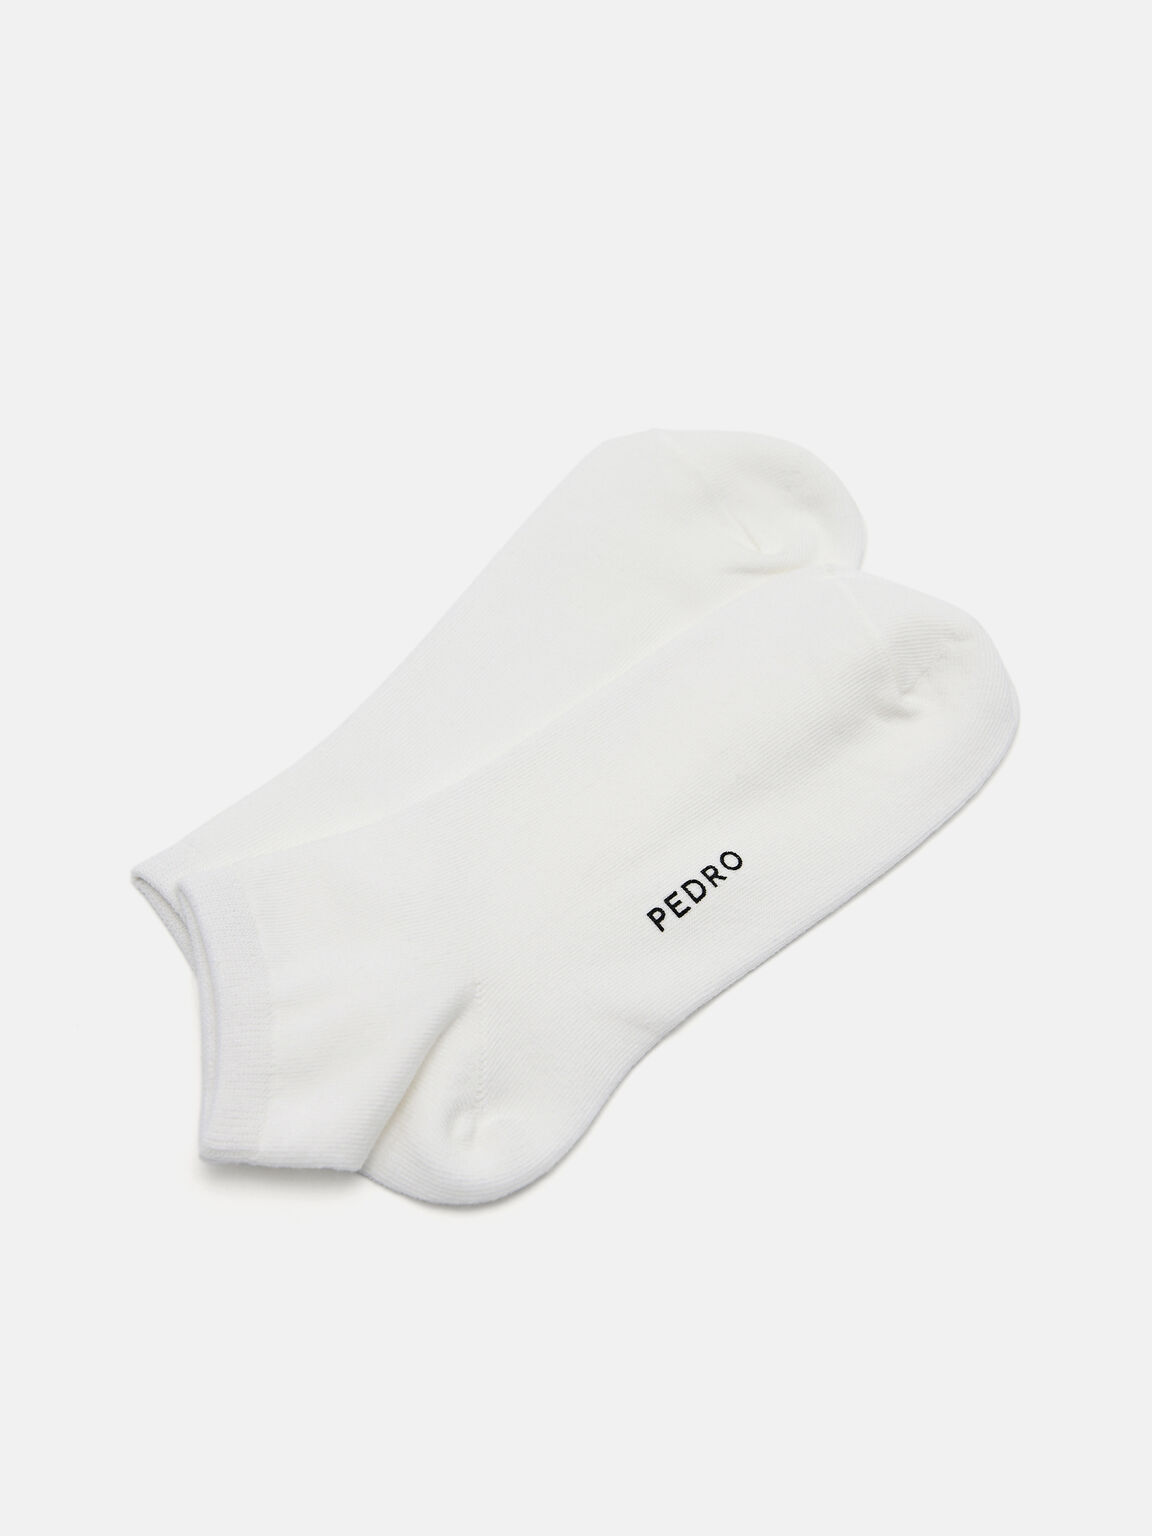 Women's Ankle Socks, White